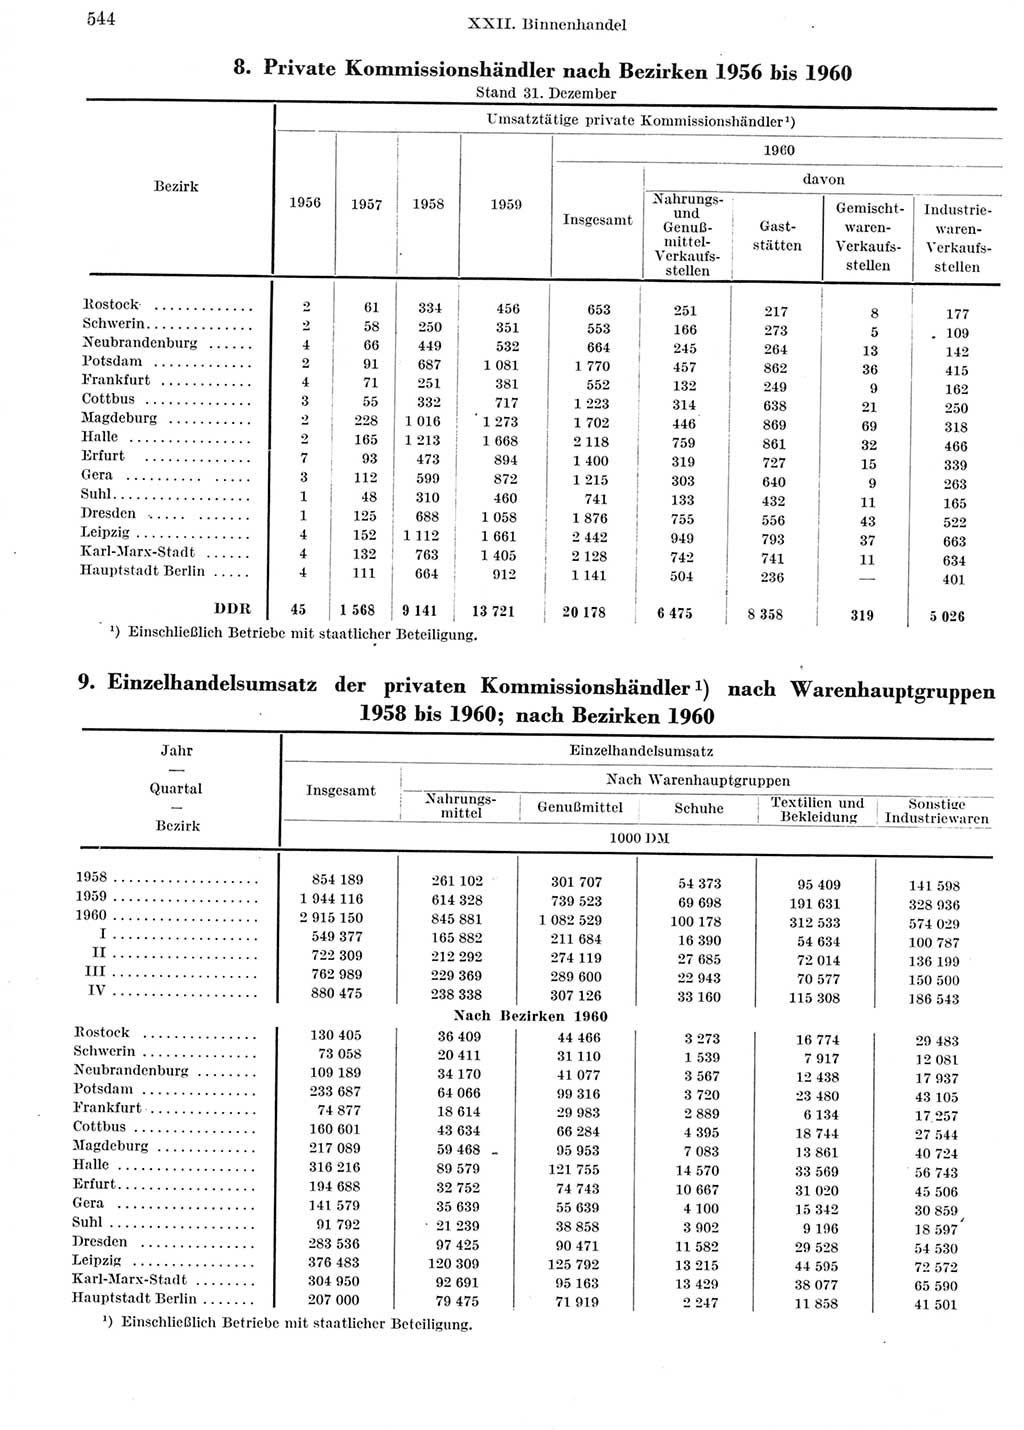 Statistisches Jahrbuch der Deutschen Demokratischen Republik (DDR) 1960-1961, Seite 544 (Stat. Jb. DDR 1960-1961, S. 544)